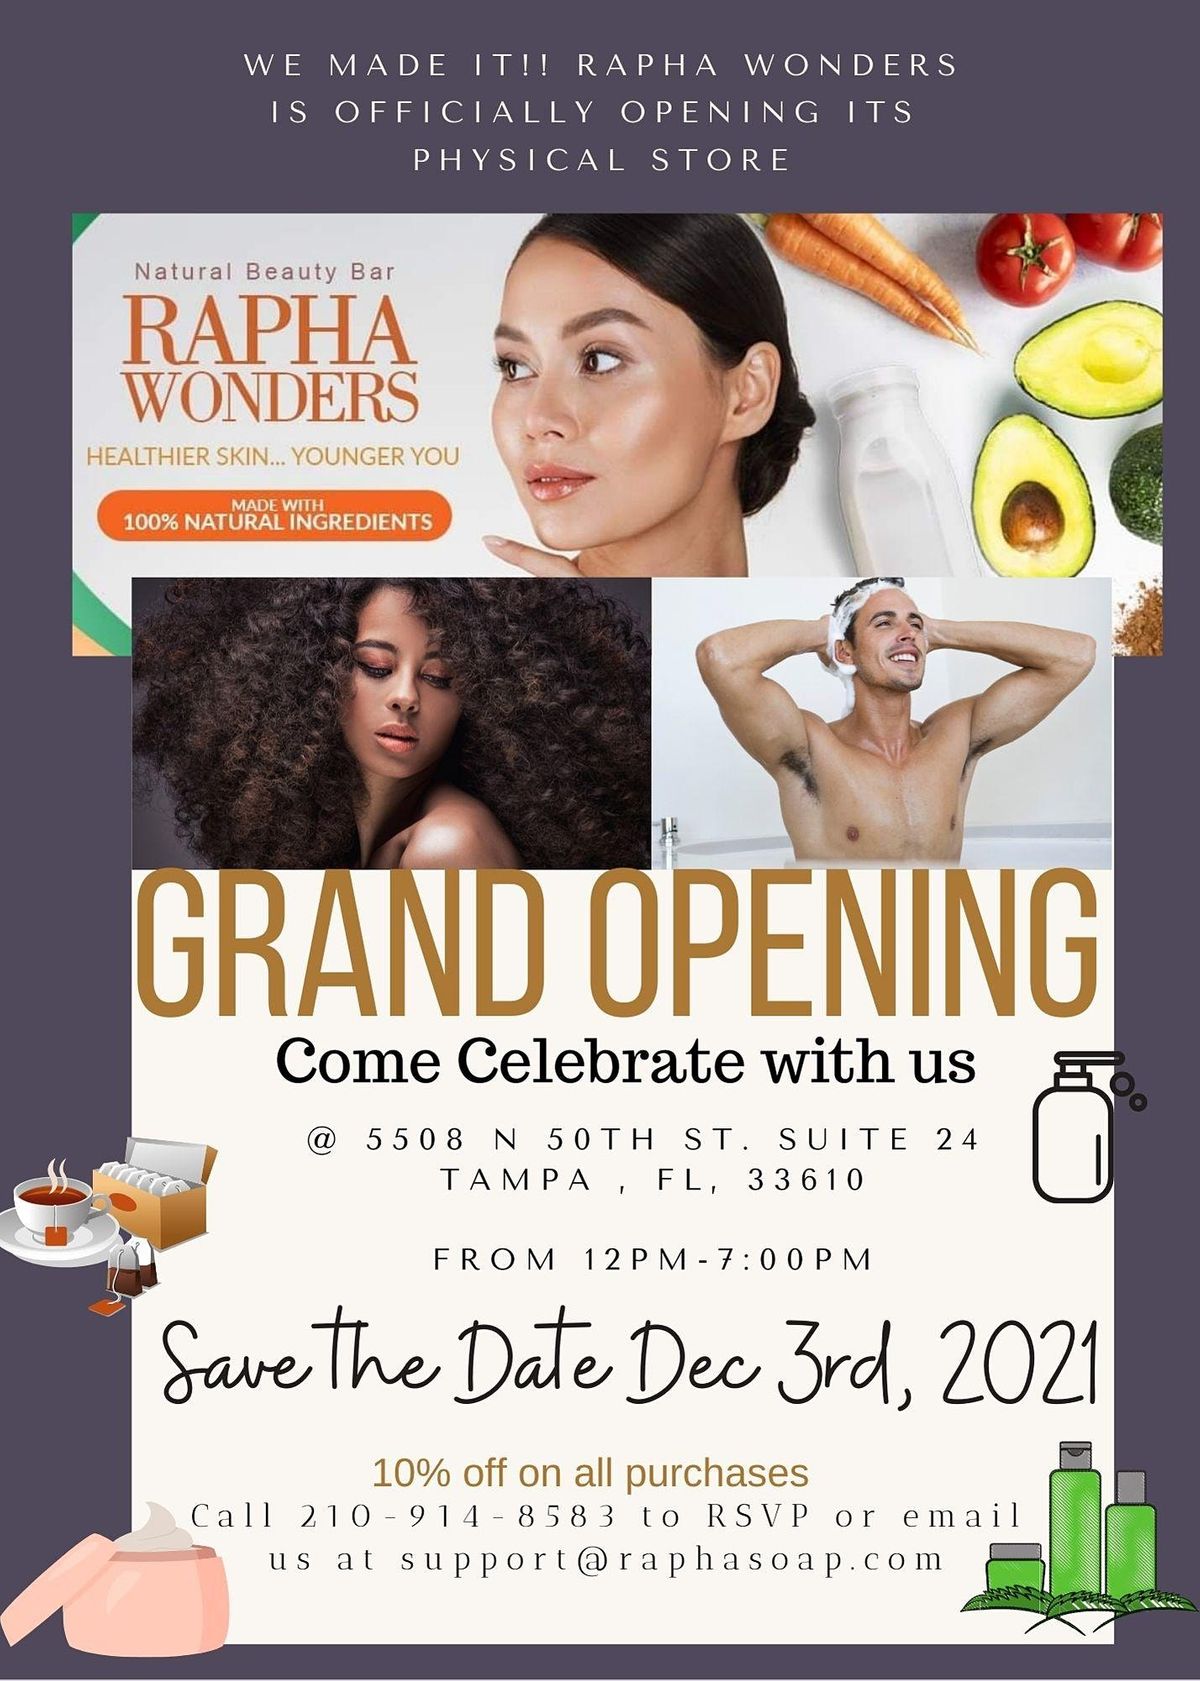 Rapha Wonders "" GRAND OPENING""